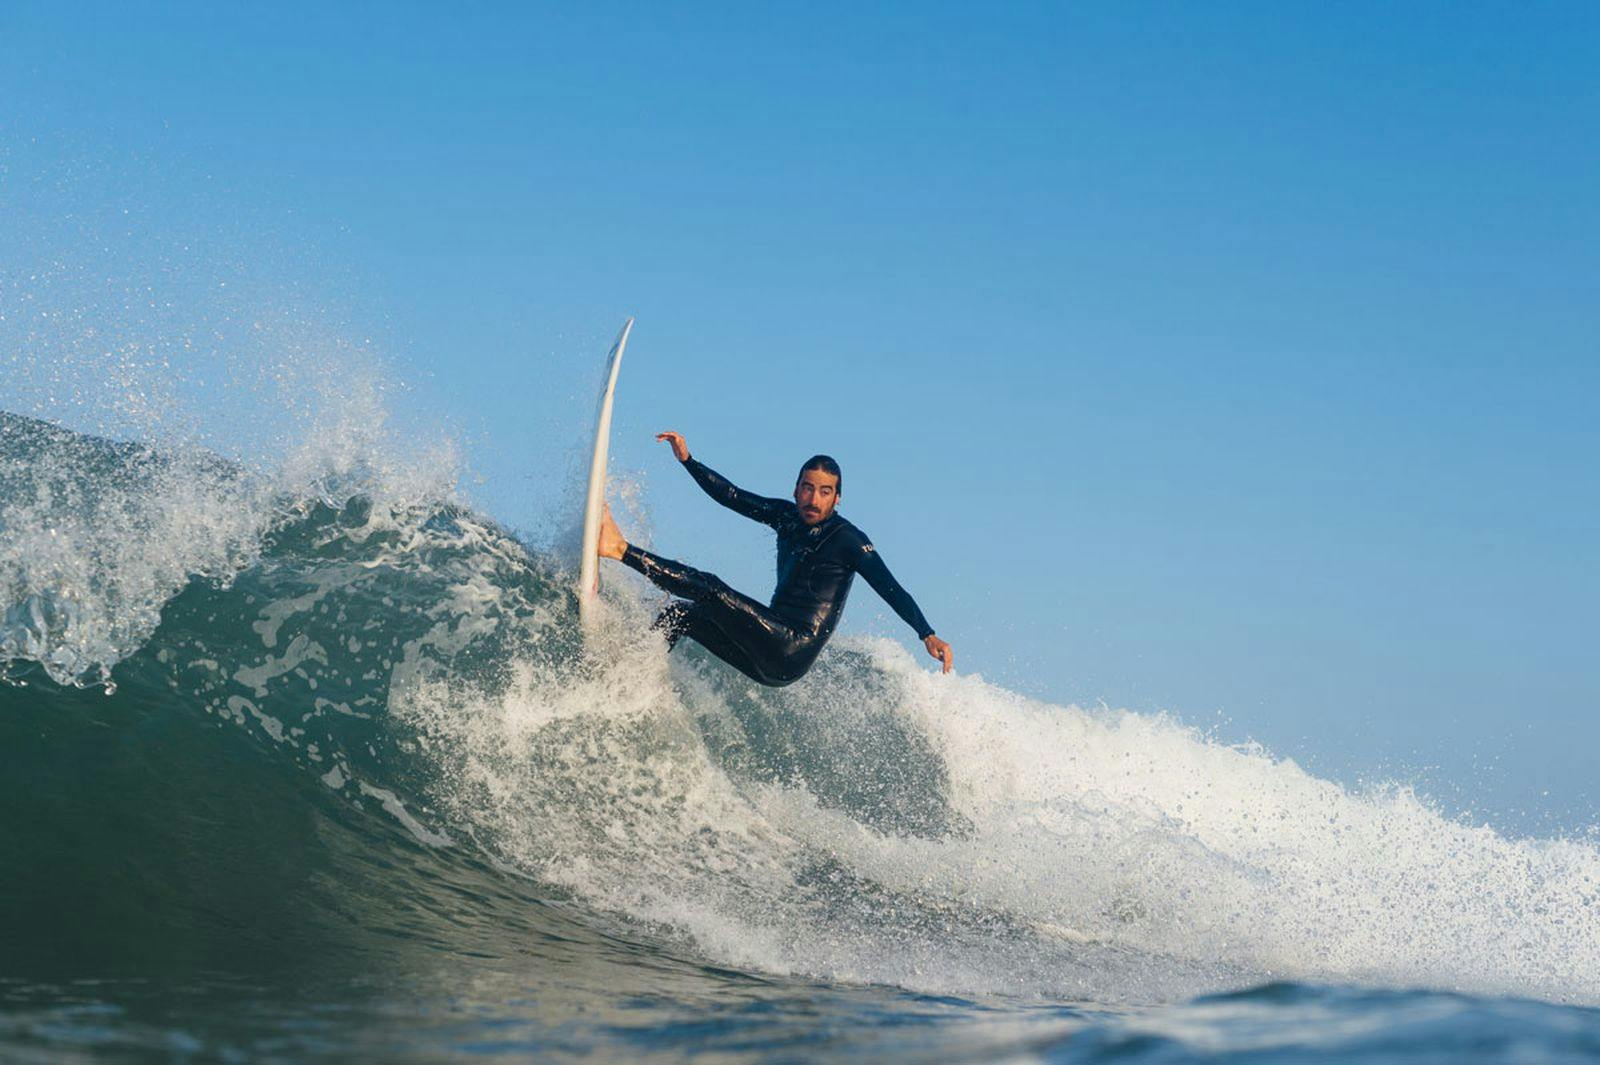 leren surfen: surfboard waxen